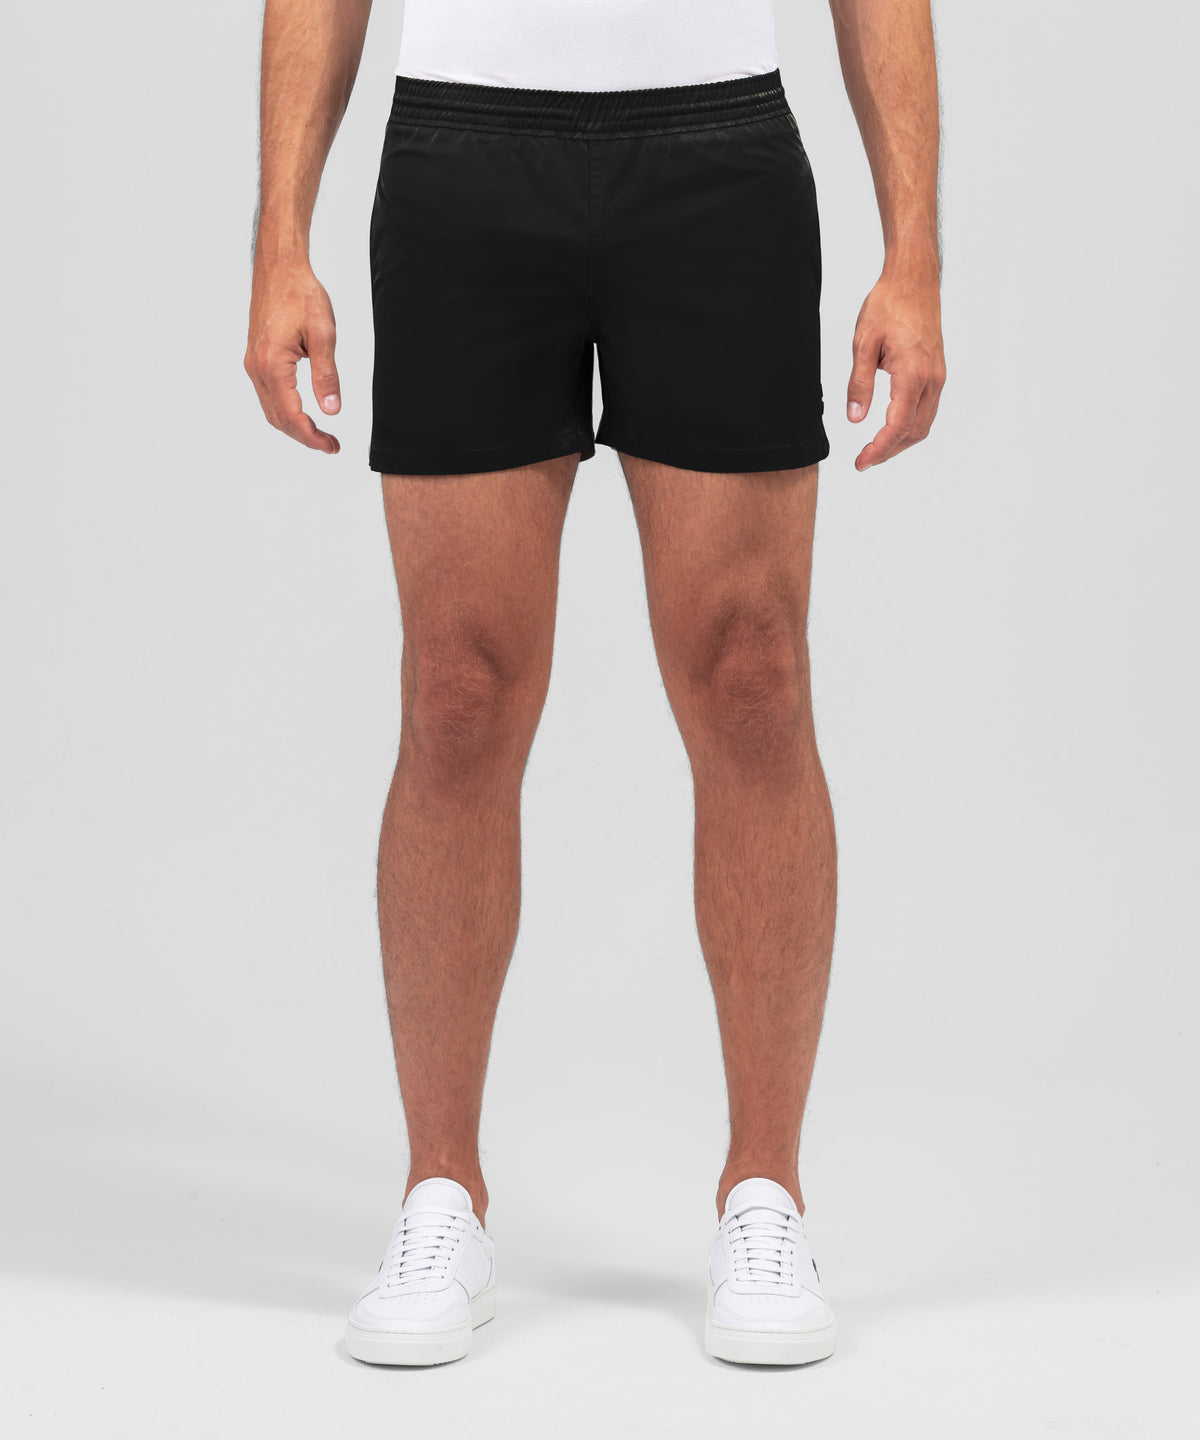 RD Exerciser Shorts: Black